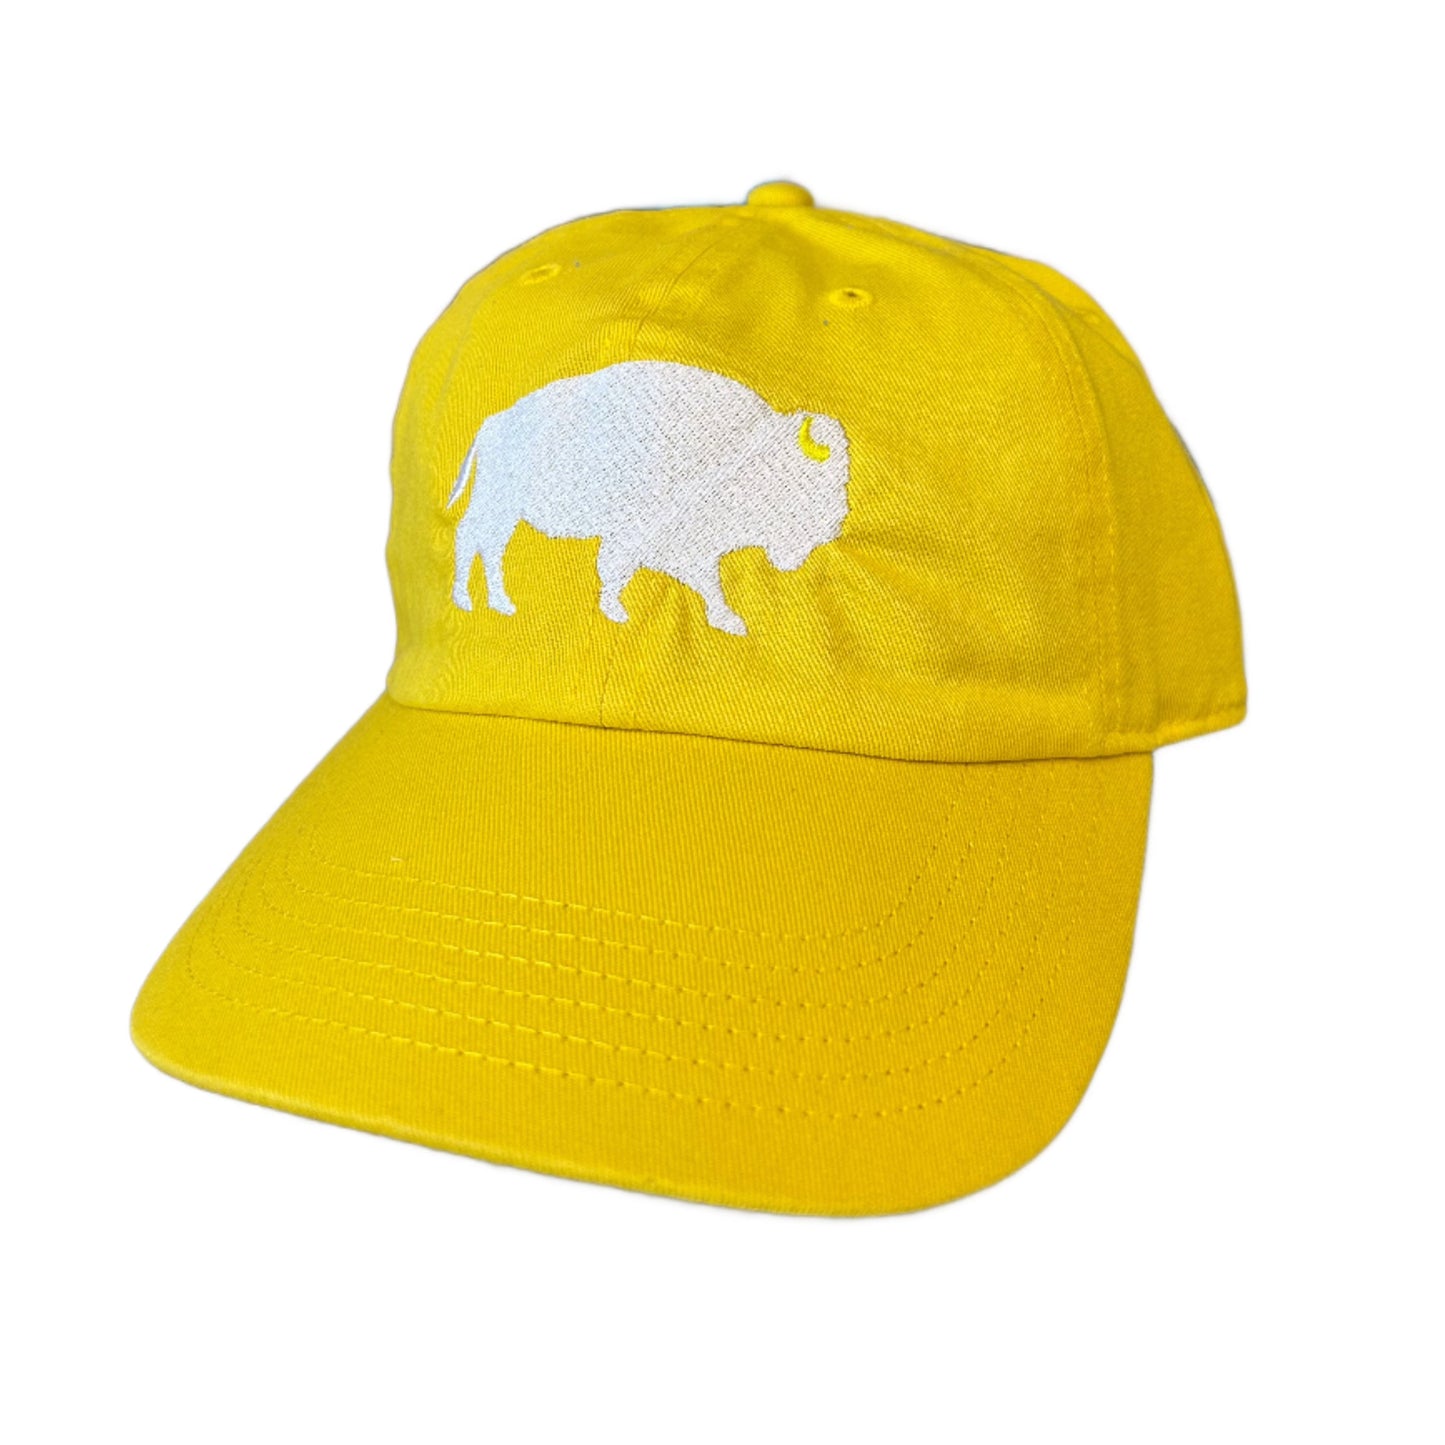 Standing Buffalo Baseball Caps in Lemon